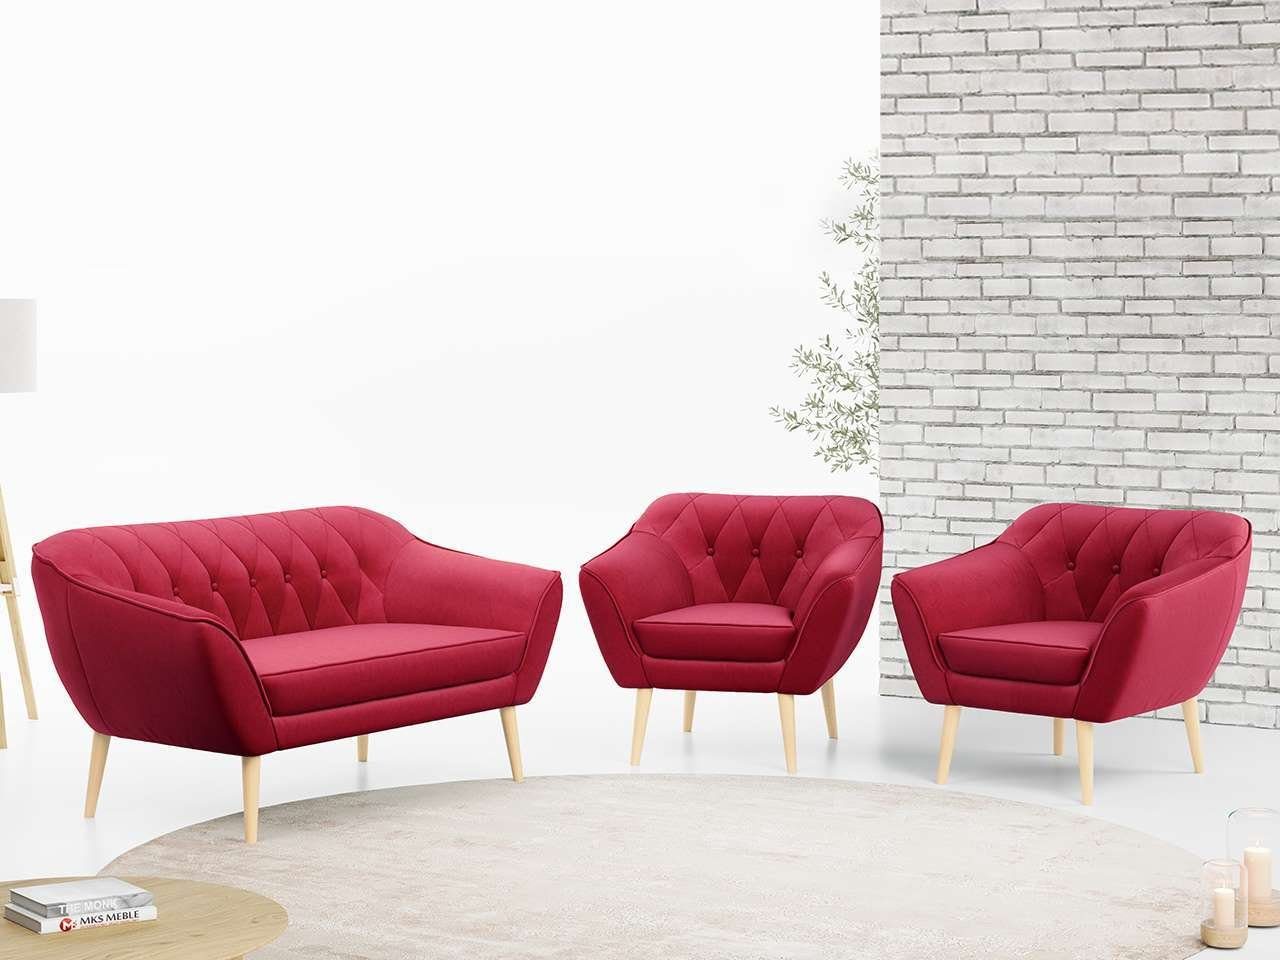 MKS MÖBEL Sofa PIRS 2 1 1, Moderne Sofa Set, Skandinavische Deko, Pirs Loungesofa und Zwei Sessels Rot Casablanca